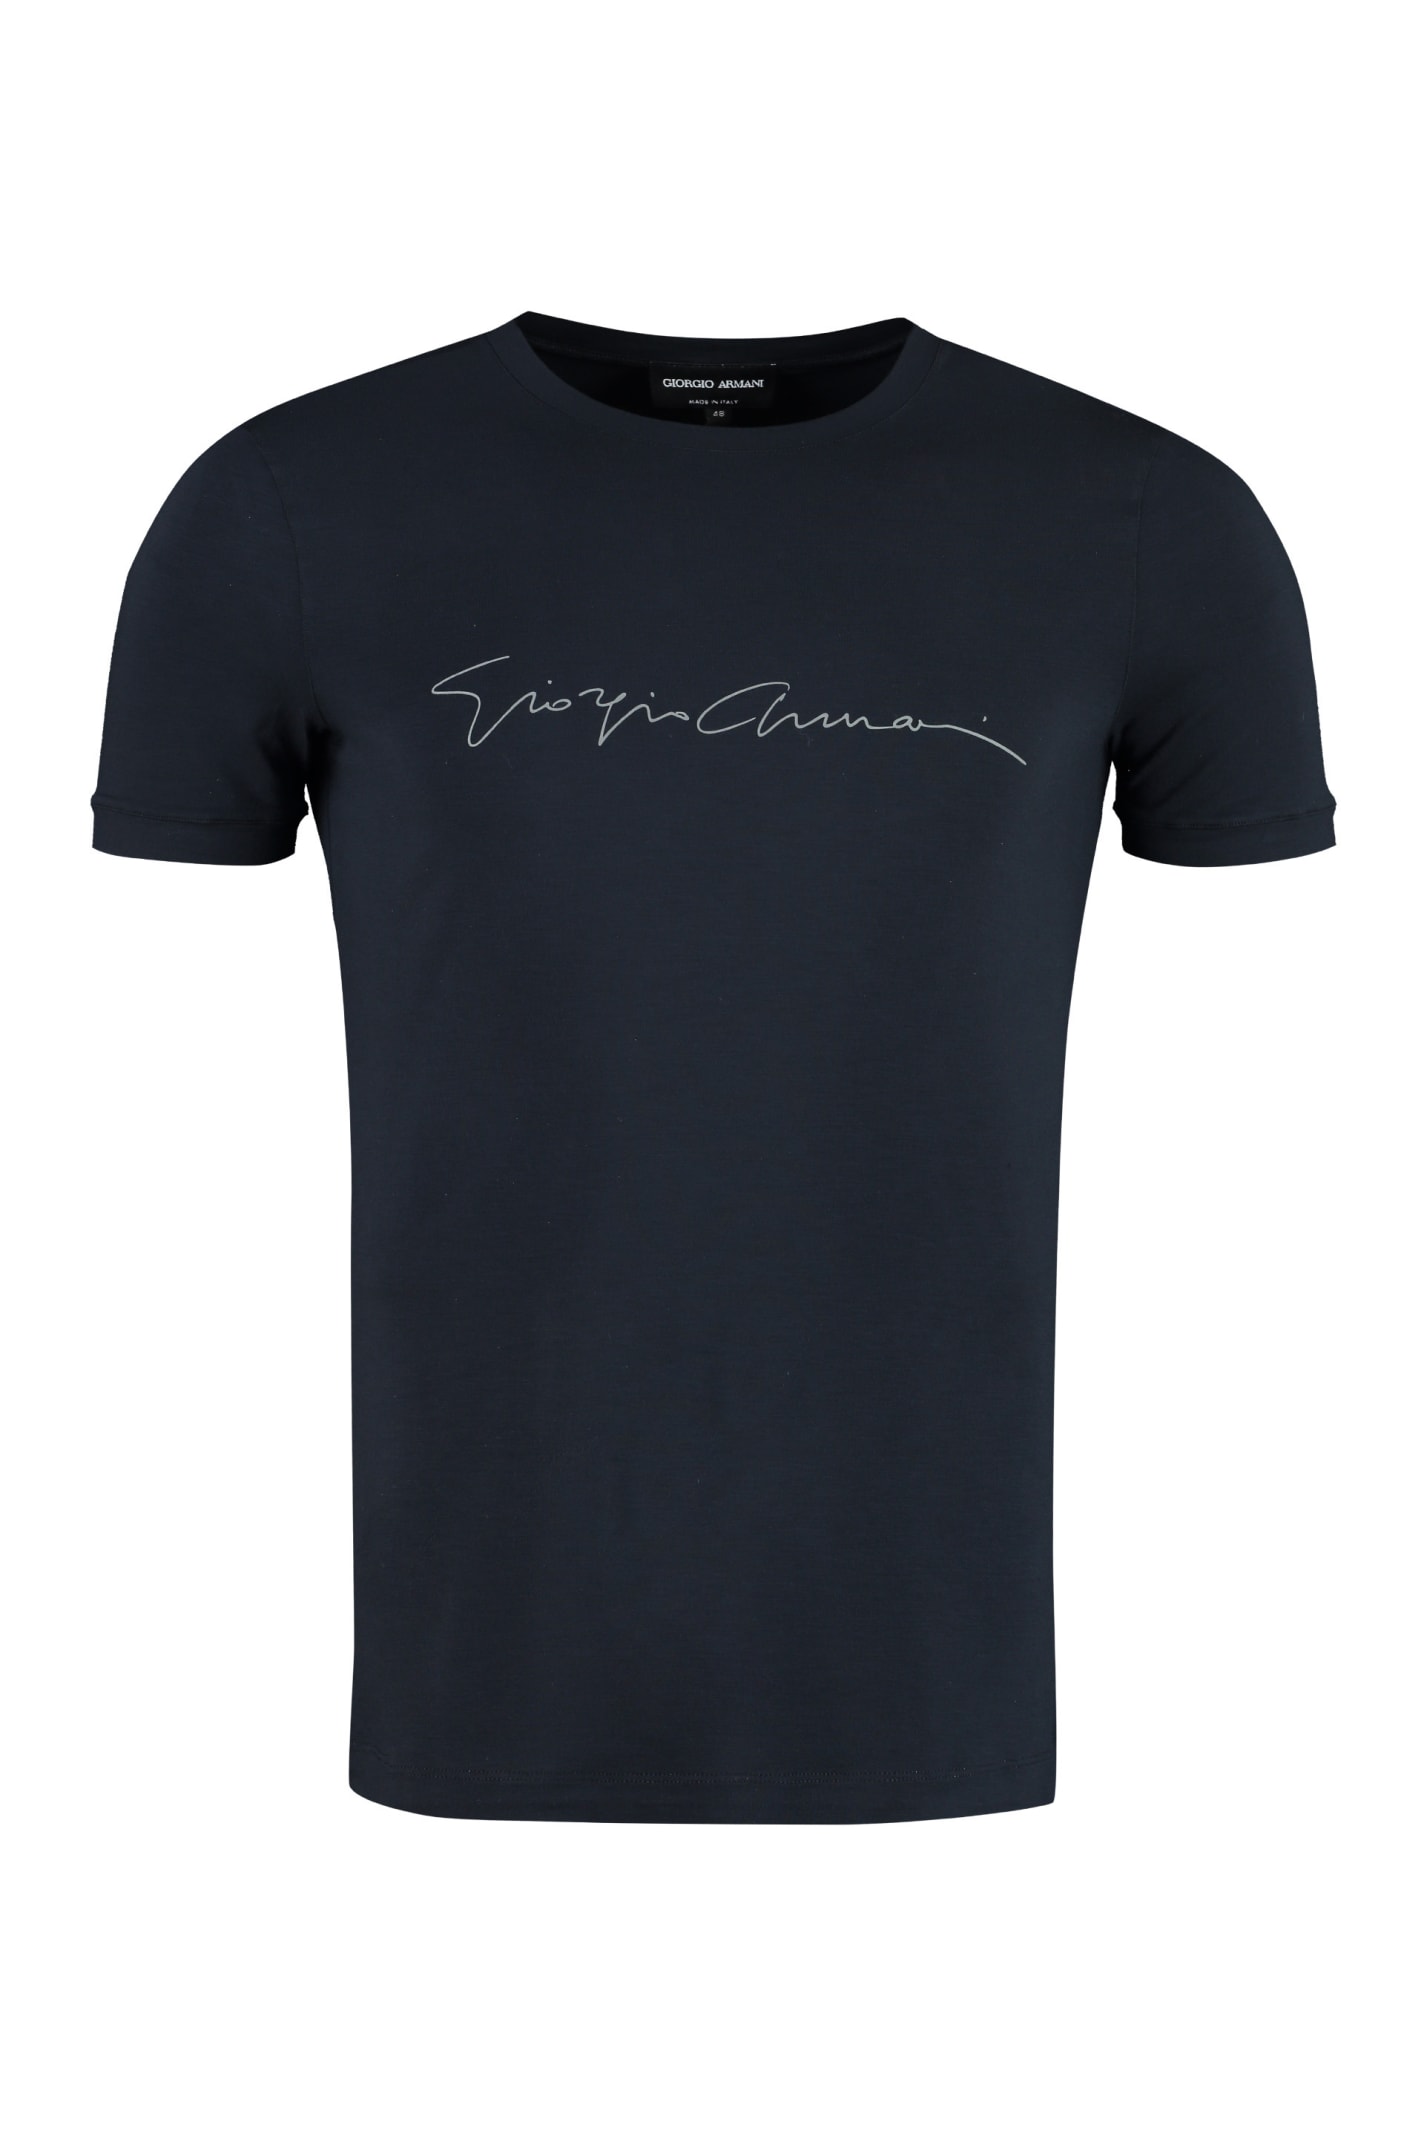 Giorgio Armani Viscose Crew-neck T-shirt